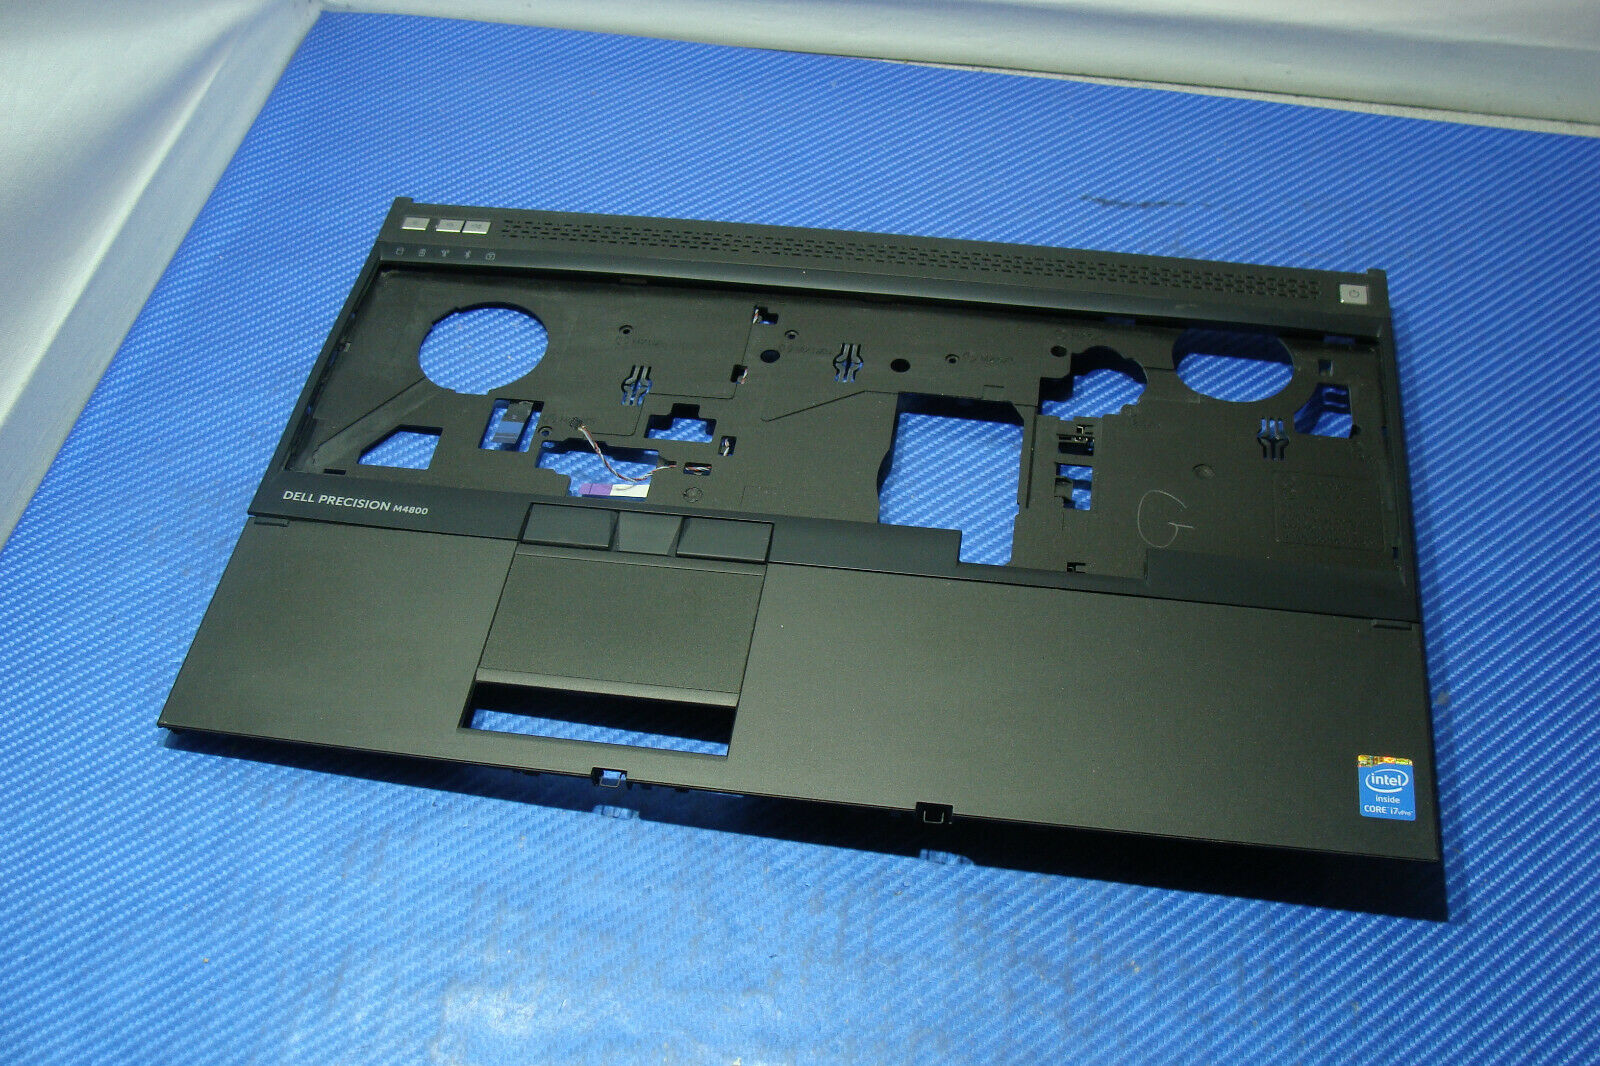 Dell Precision M4800 15.6